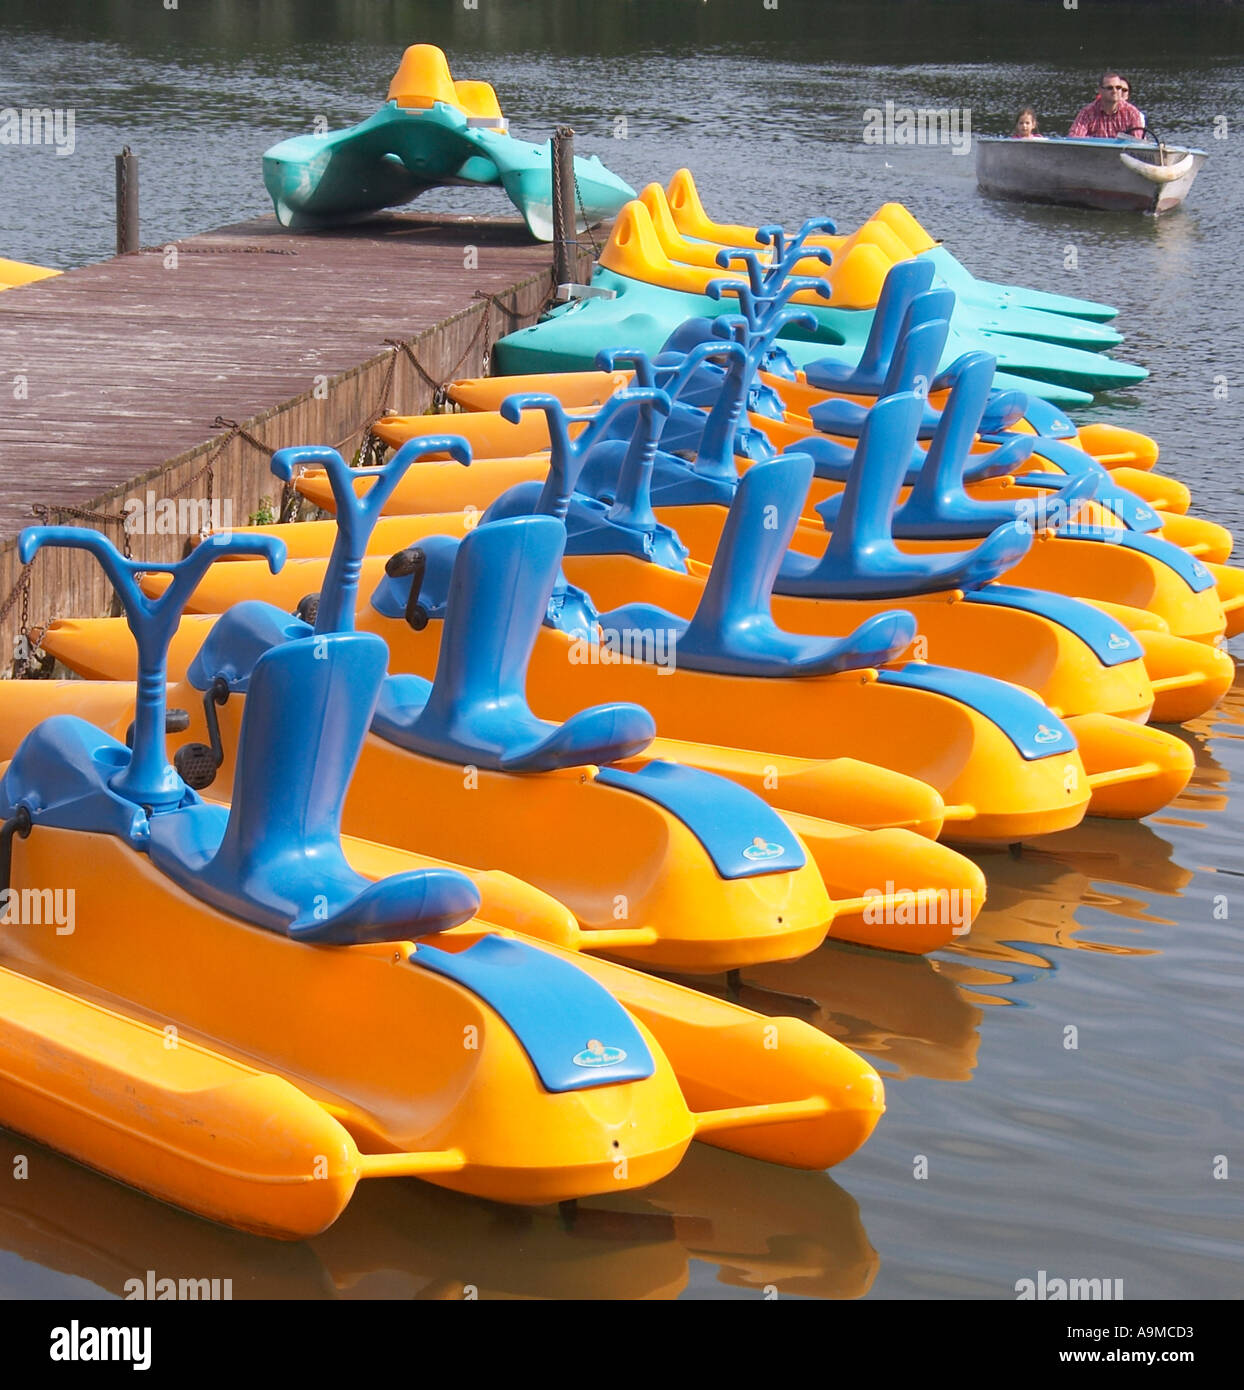 Noleggio di barche a pedali Foto stock - Alamy